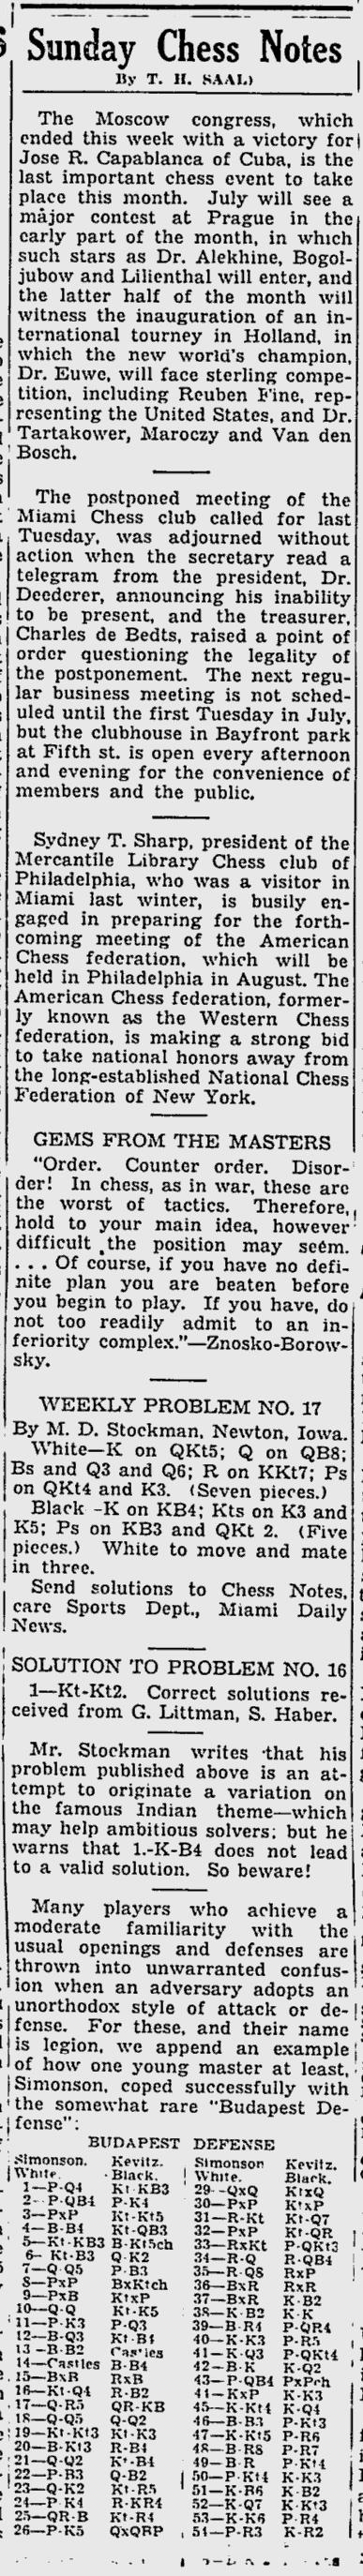 1936.06.14-01 Miami Daily News.jpg